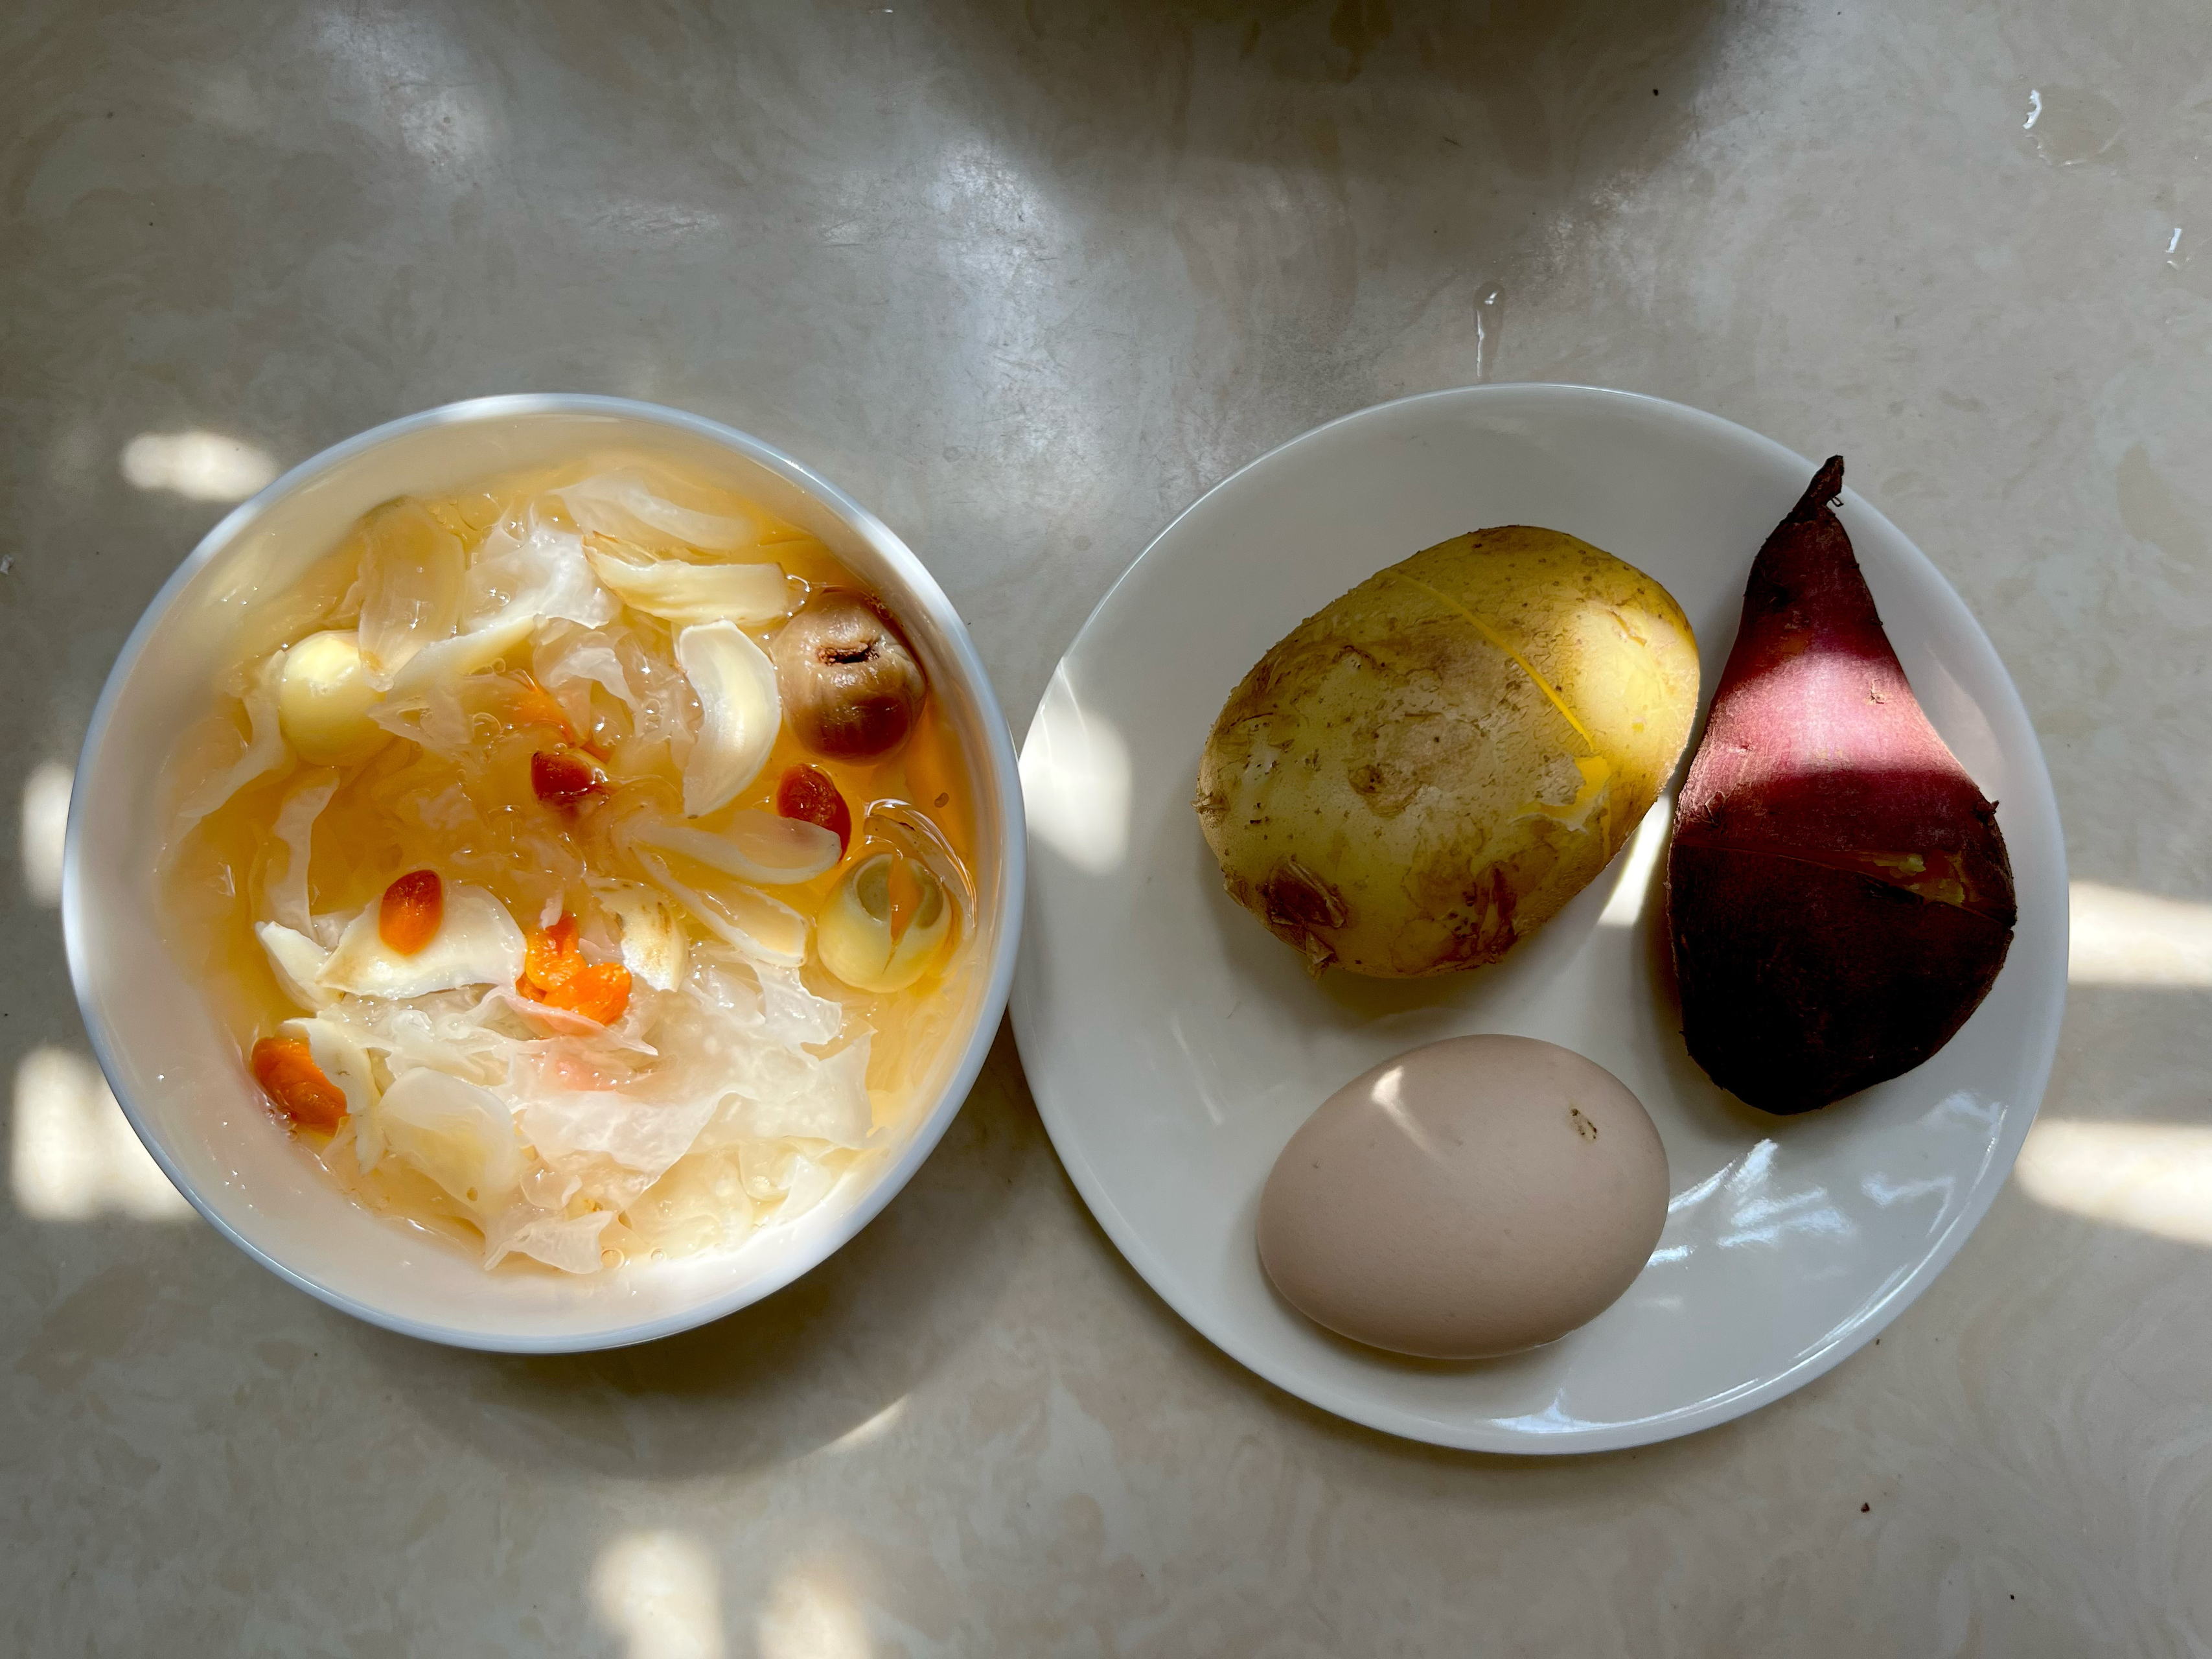 营养健康早餐～

“桂圆莲子百合银耳羹”
“蒸土豆 板栗红薯 水煮蛋”的做法